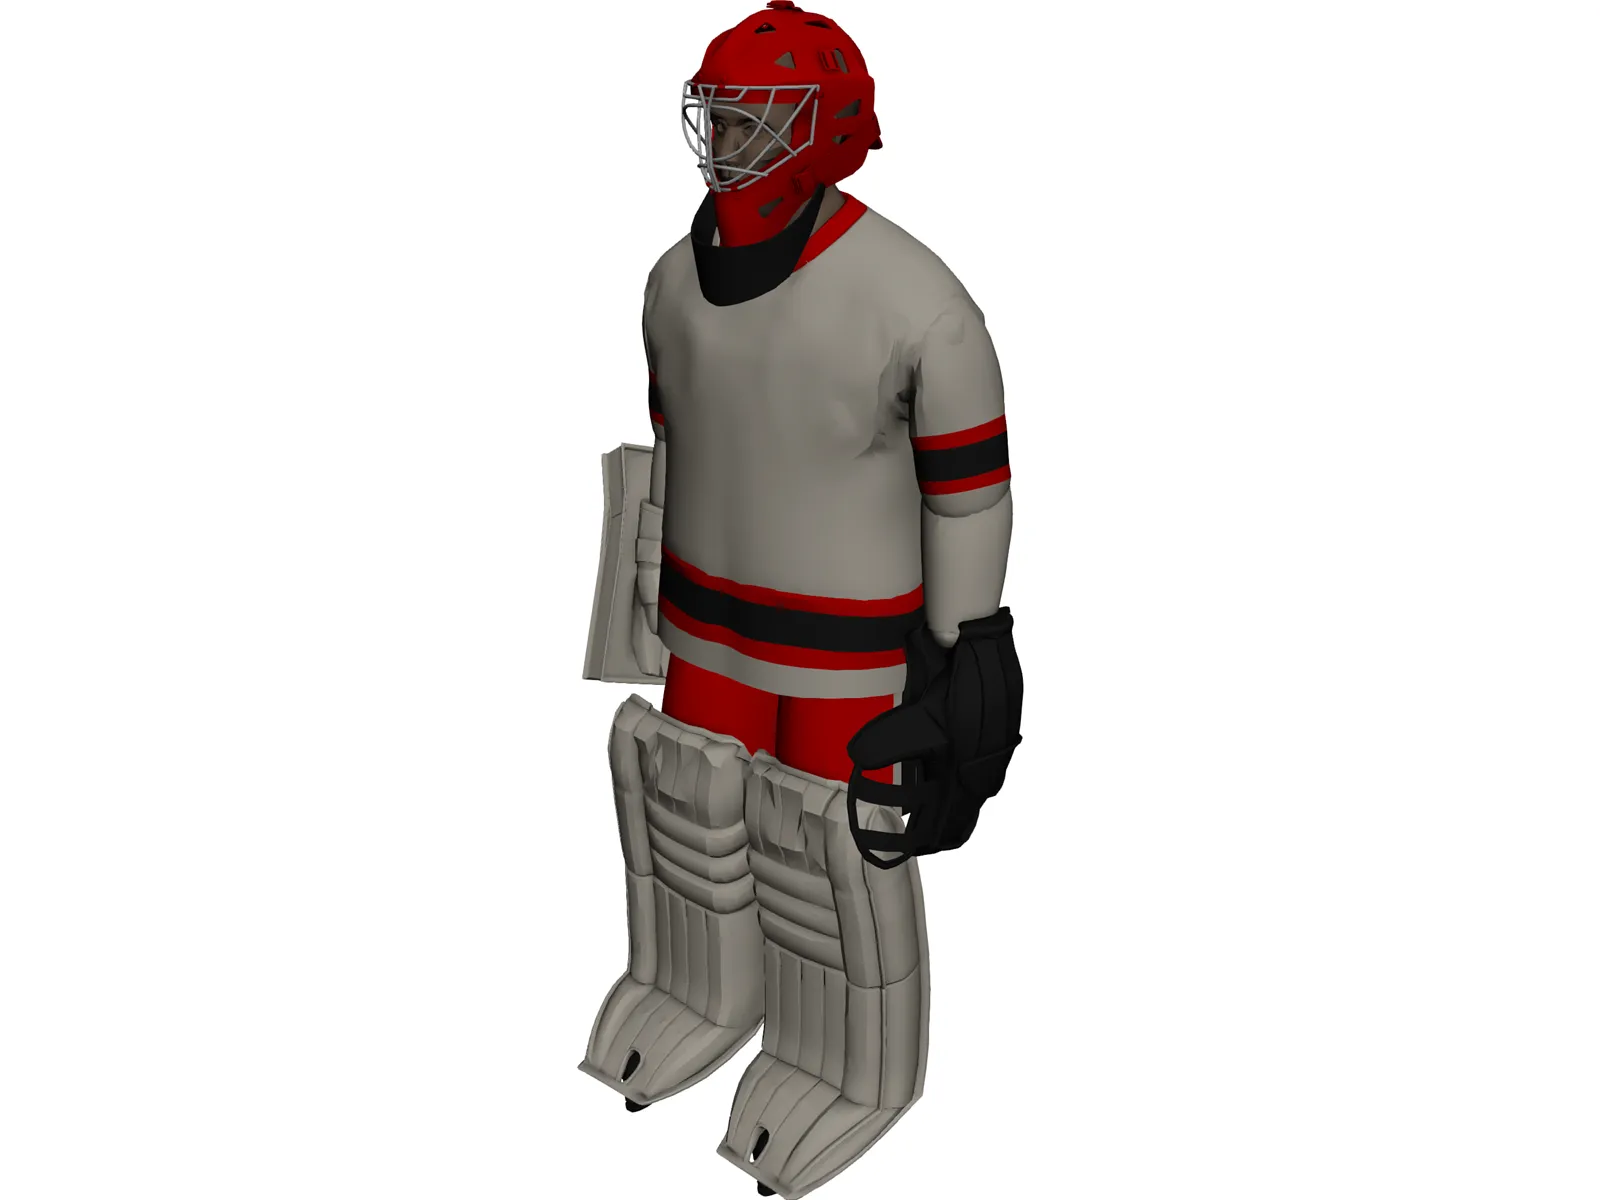 Hockey Goalie 3D Model